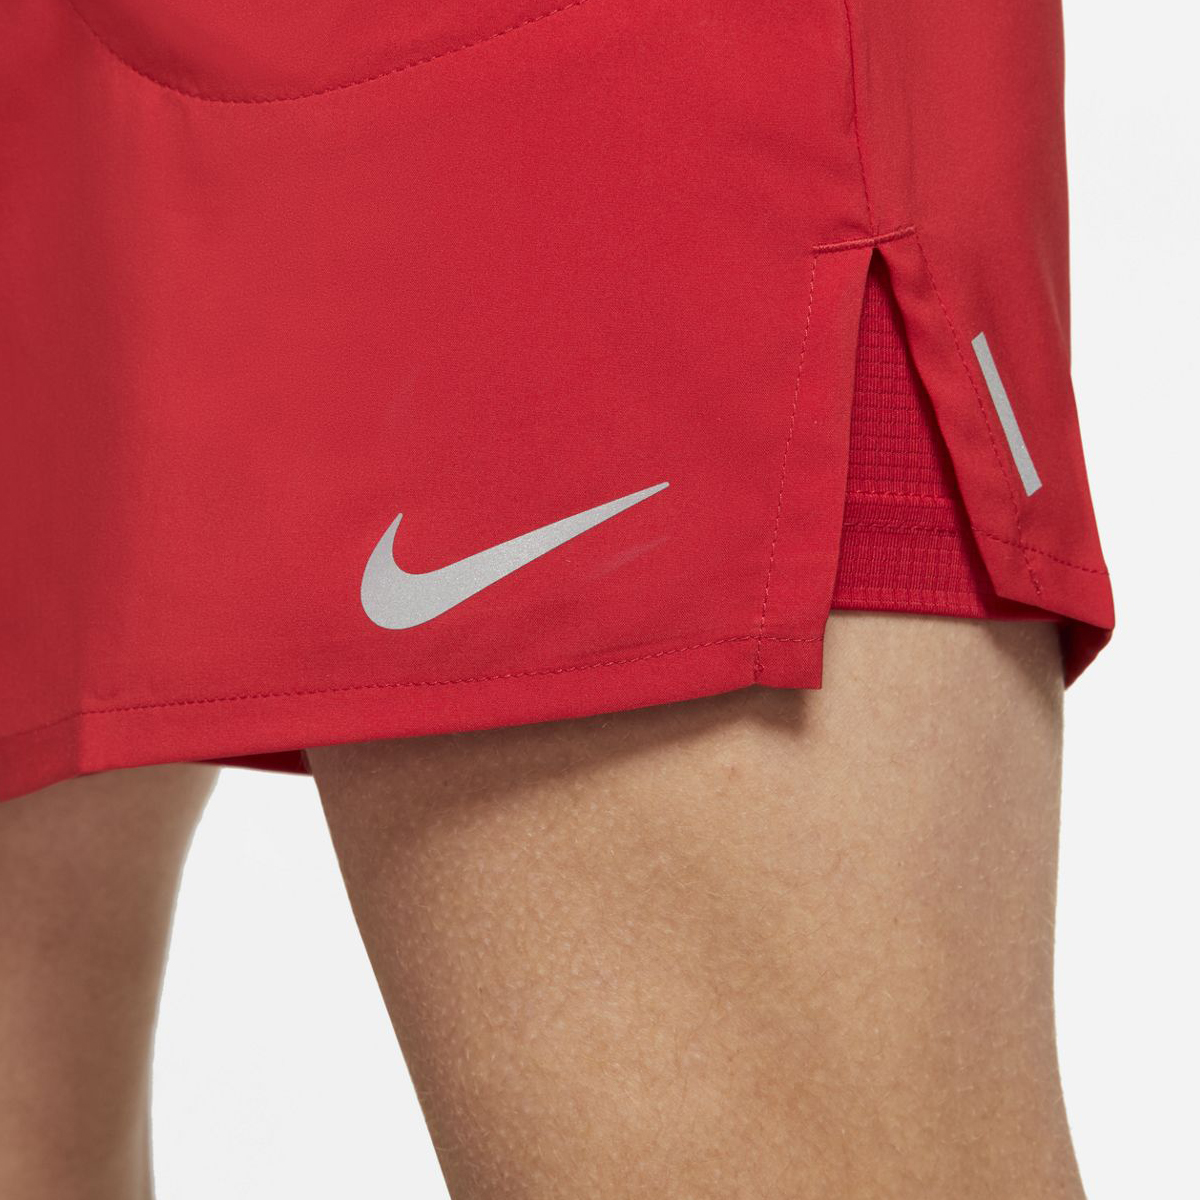 Nike Flex Stride Short, , large image number null